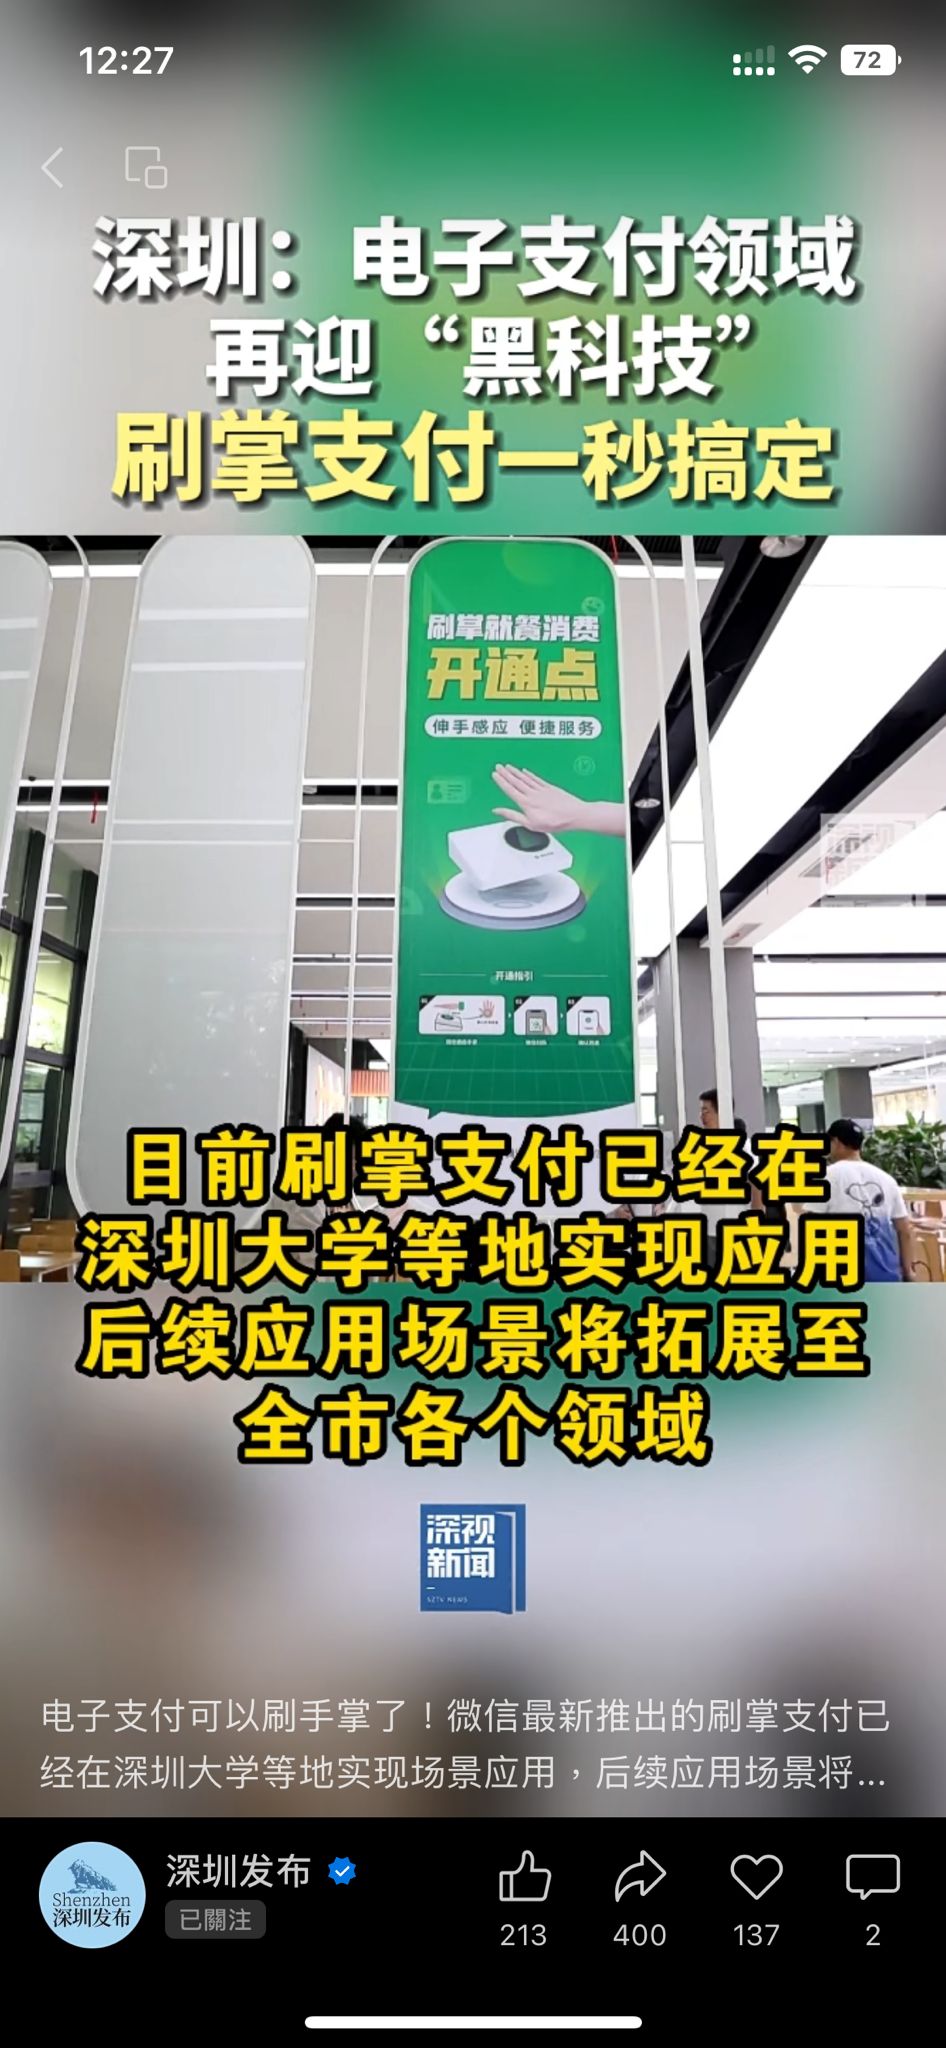 廣東多間7-11便利店、北京、深圳地鐵都亦有開通。（圖片來源：微信@深圳發佈）